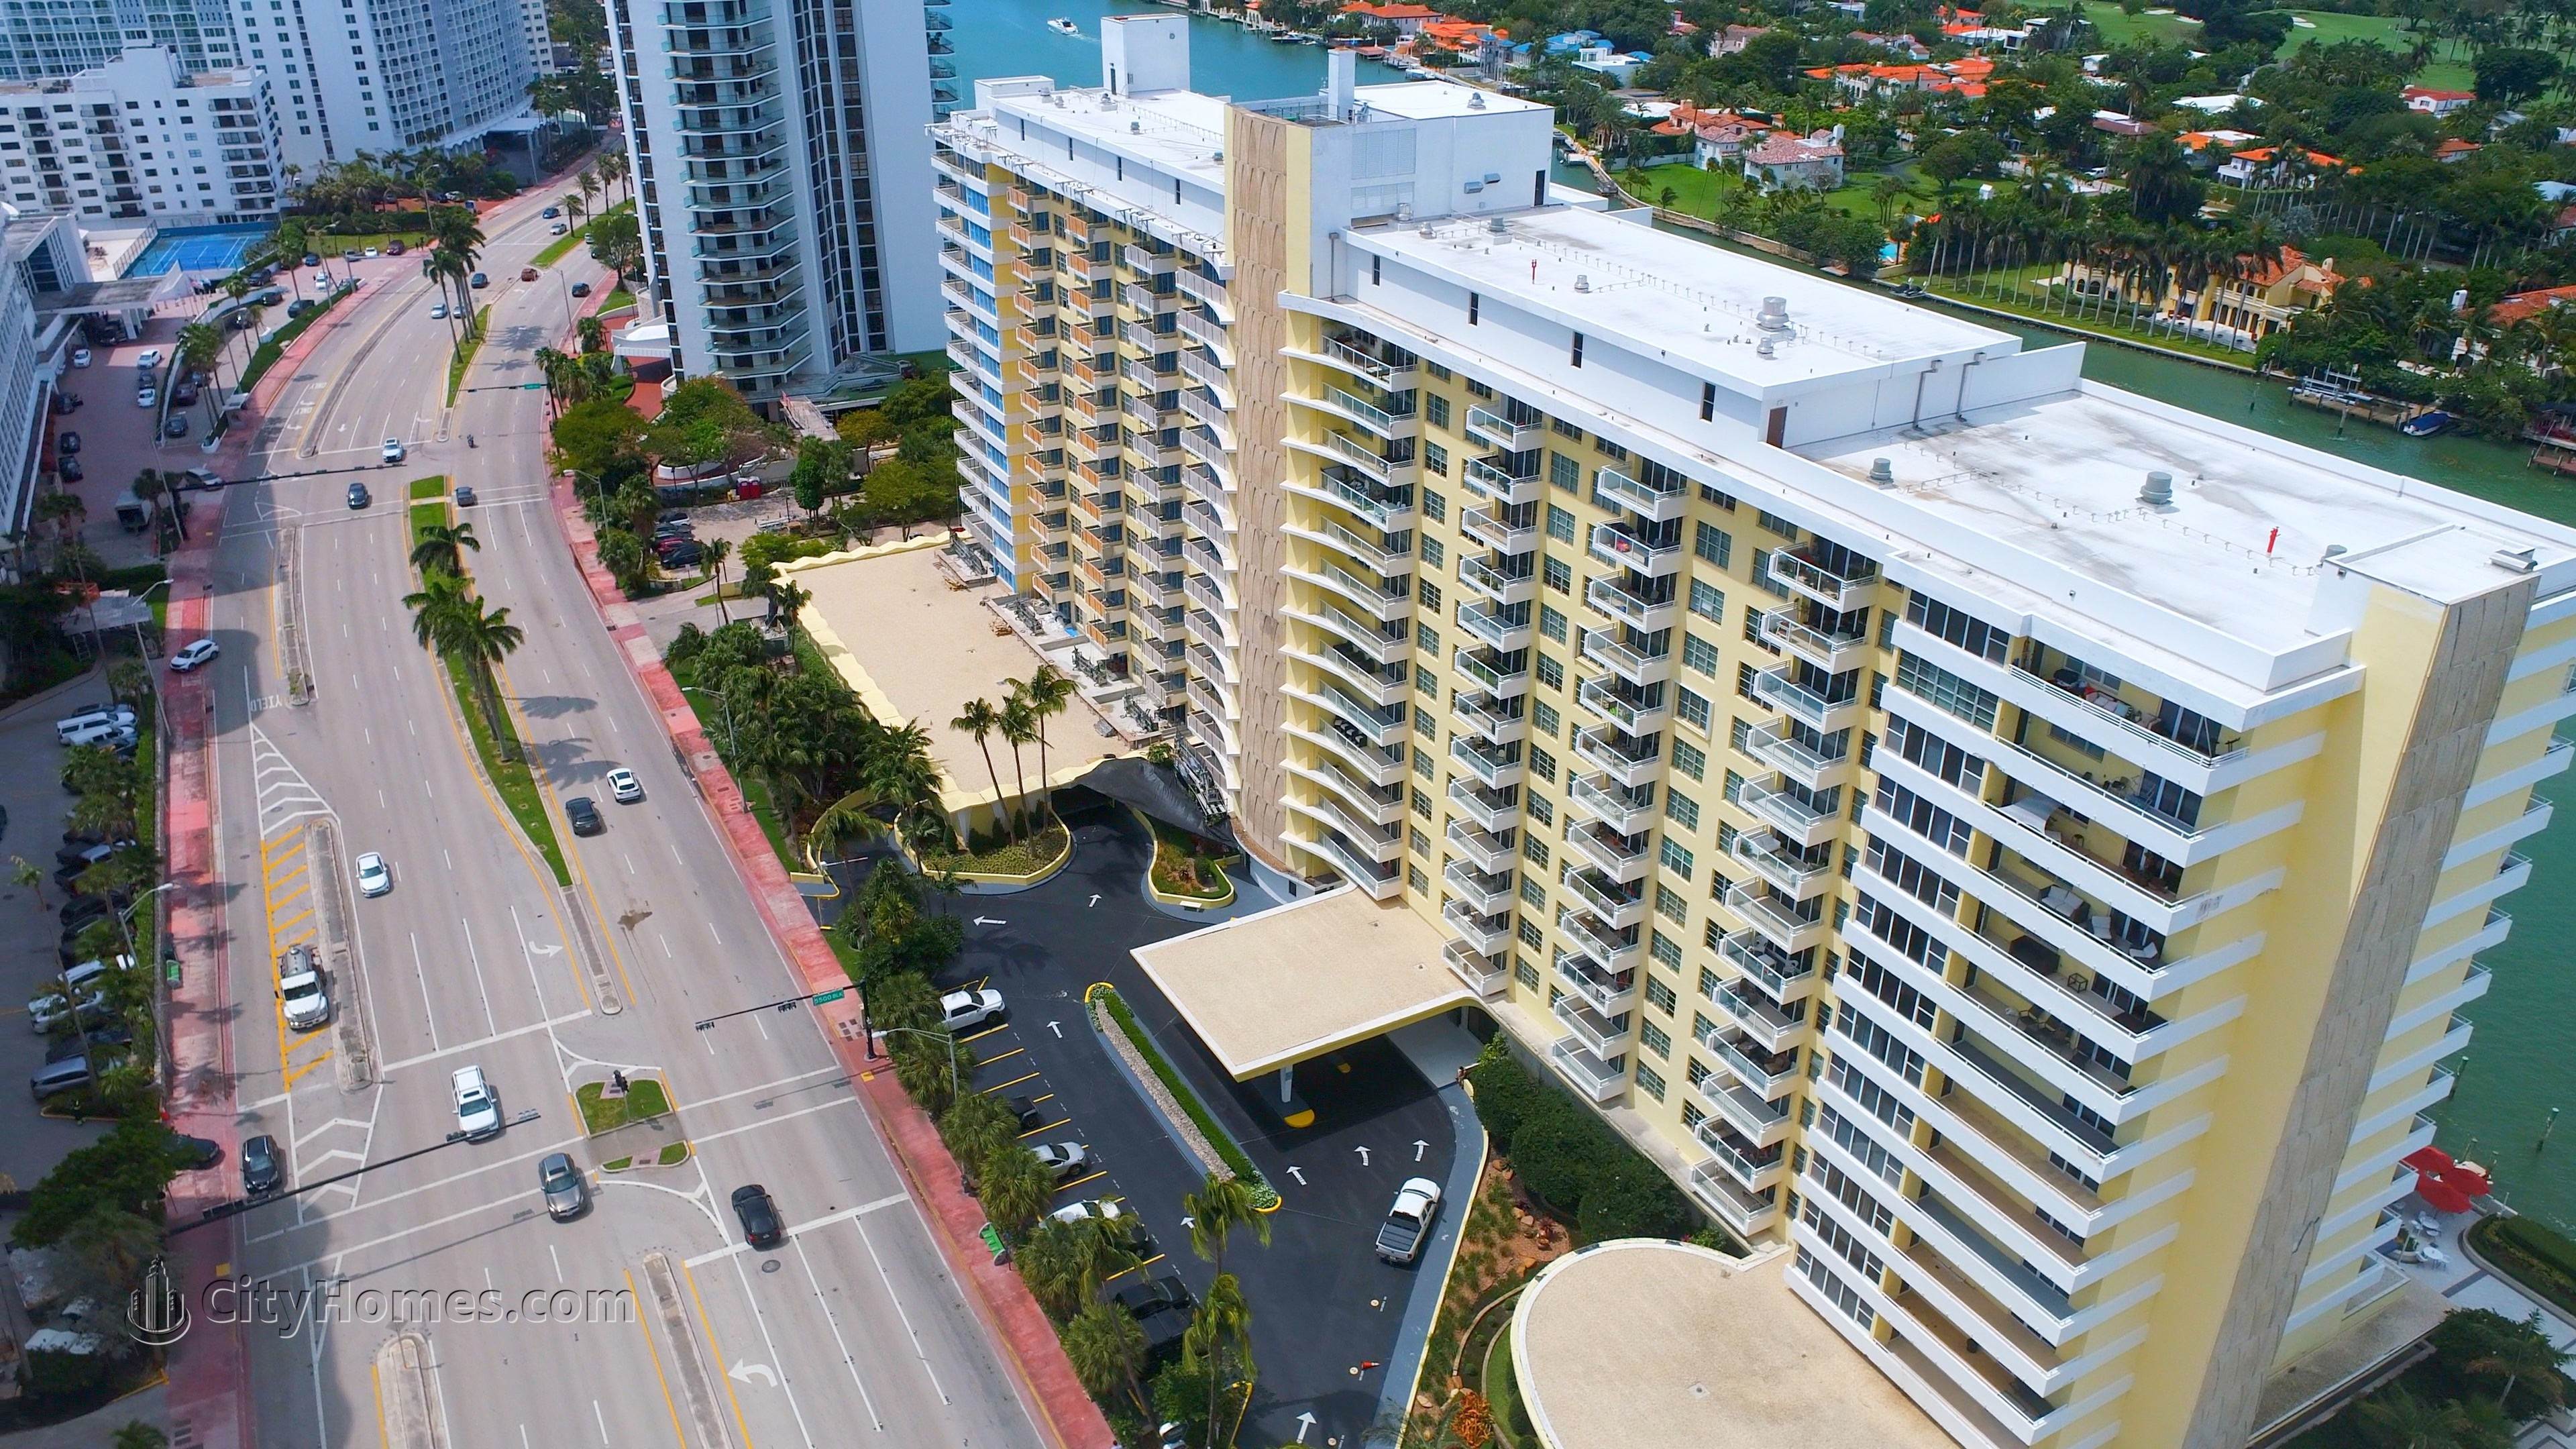 3. 5600 COLLINS  building at 5600 Collins Avenue, Miami Beach, FL 33140